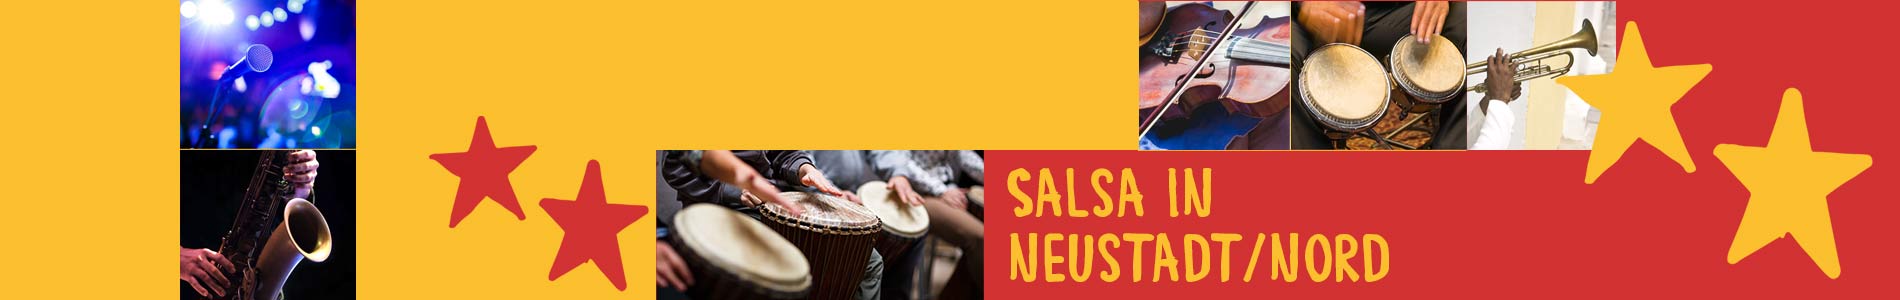 Salsa in Neustadt/Nord – Salsa lernen und tanzen, Tanzkurse, Partys, Veranstaltungen